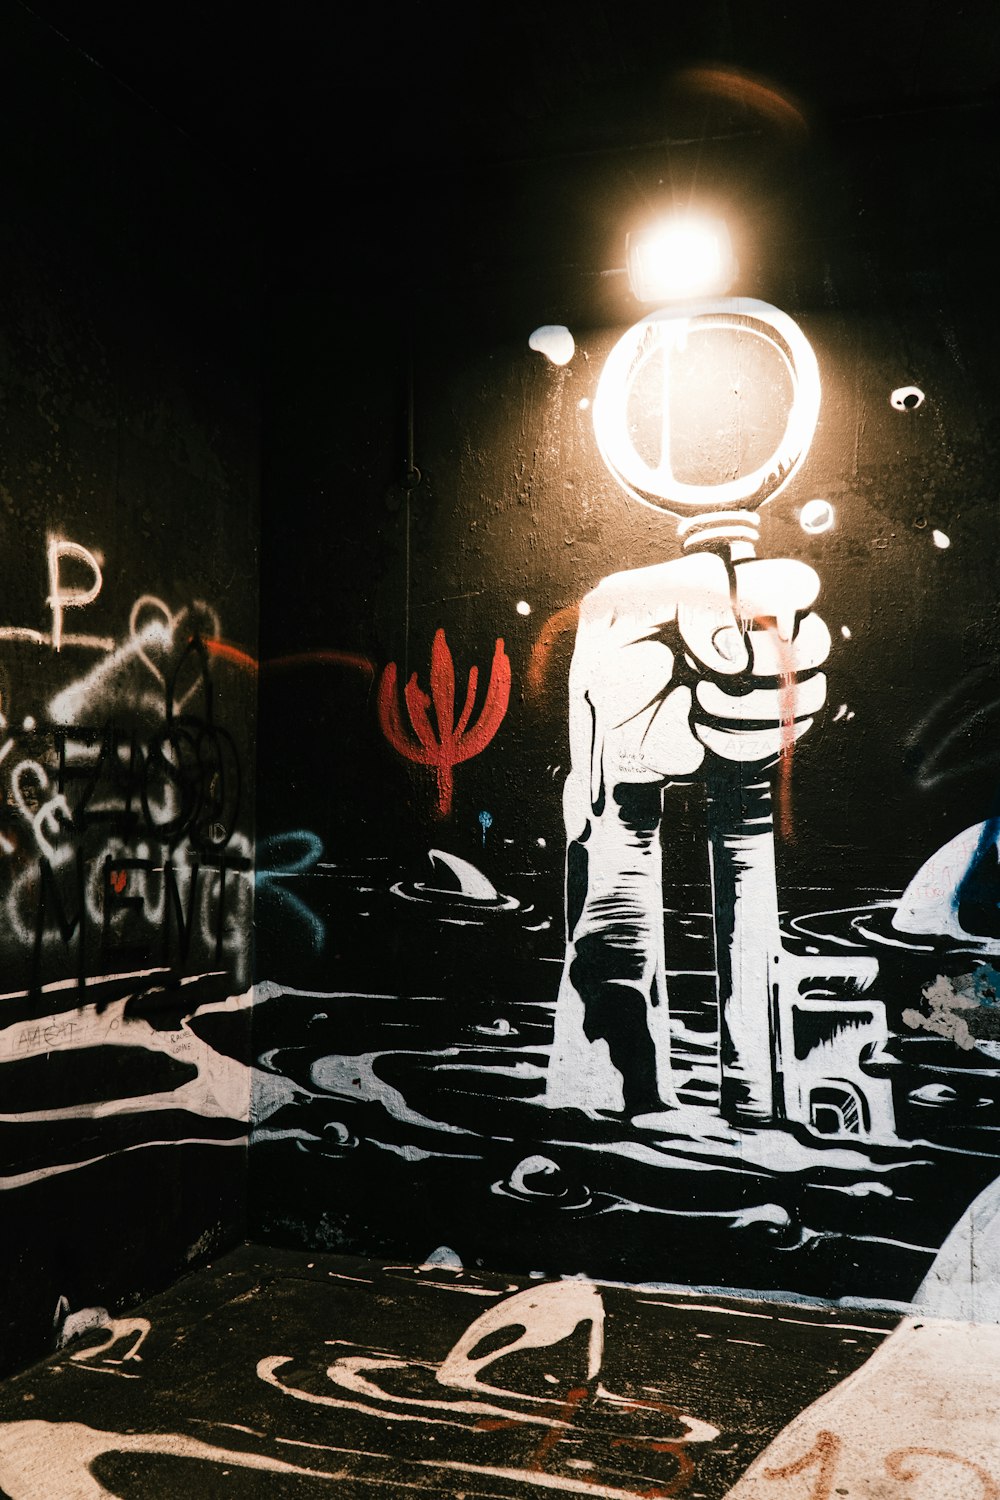 Mann in schwarzer Anzugjacke und Hose vor Wand mit Graffiti